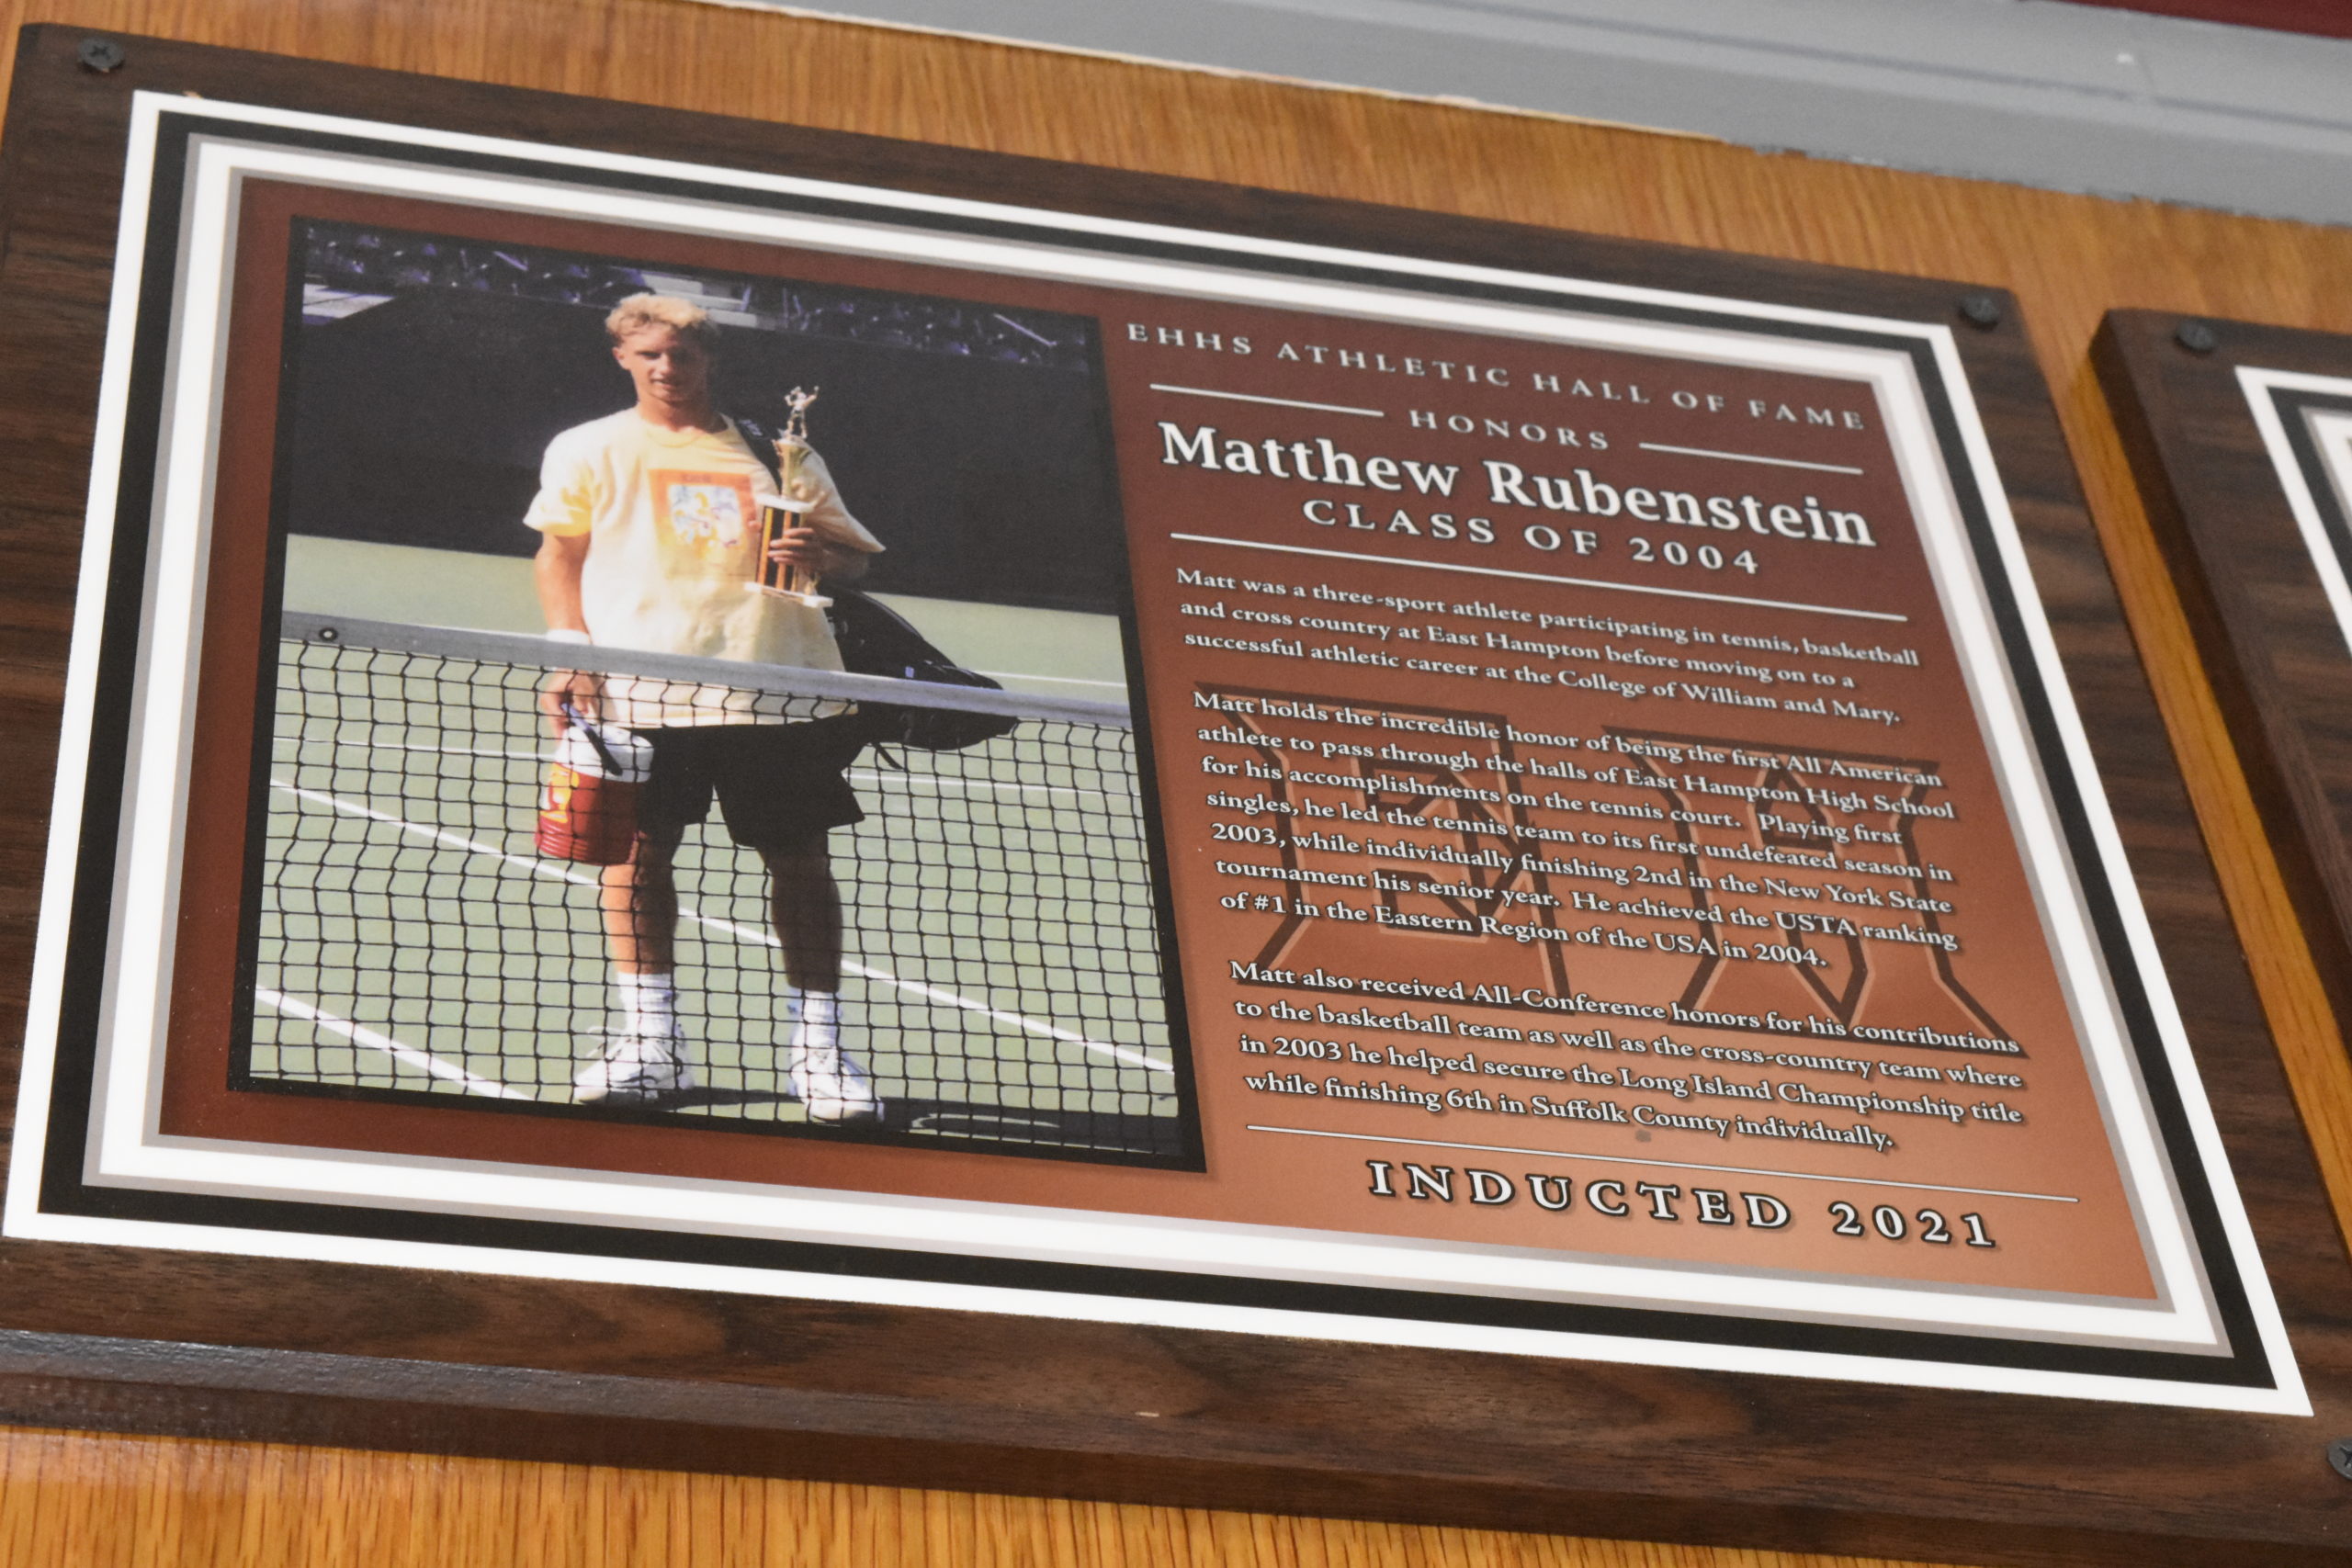 Matthew Rubenstein's plaque.